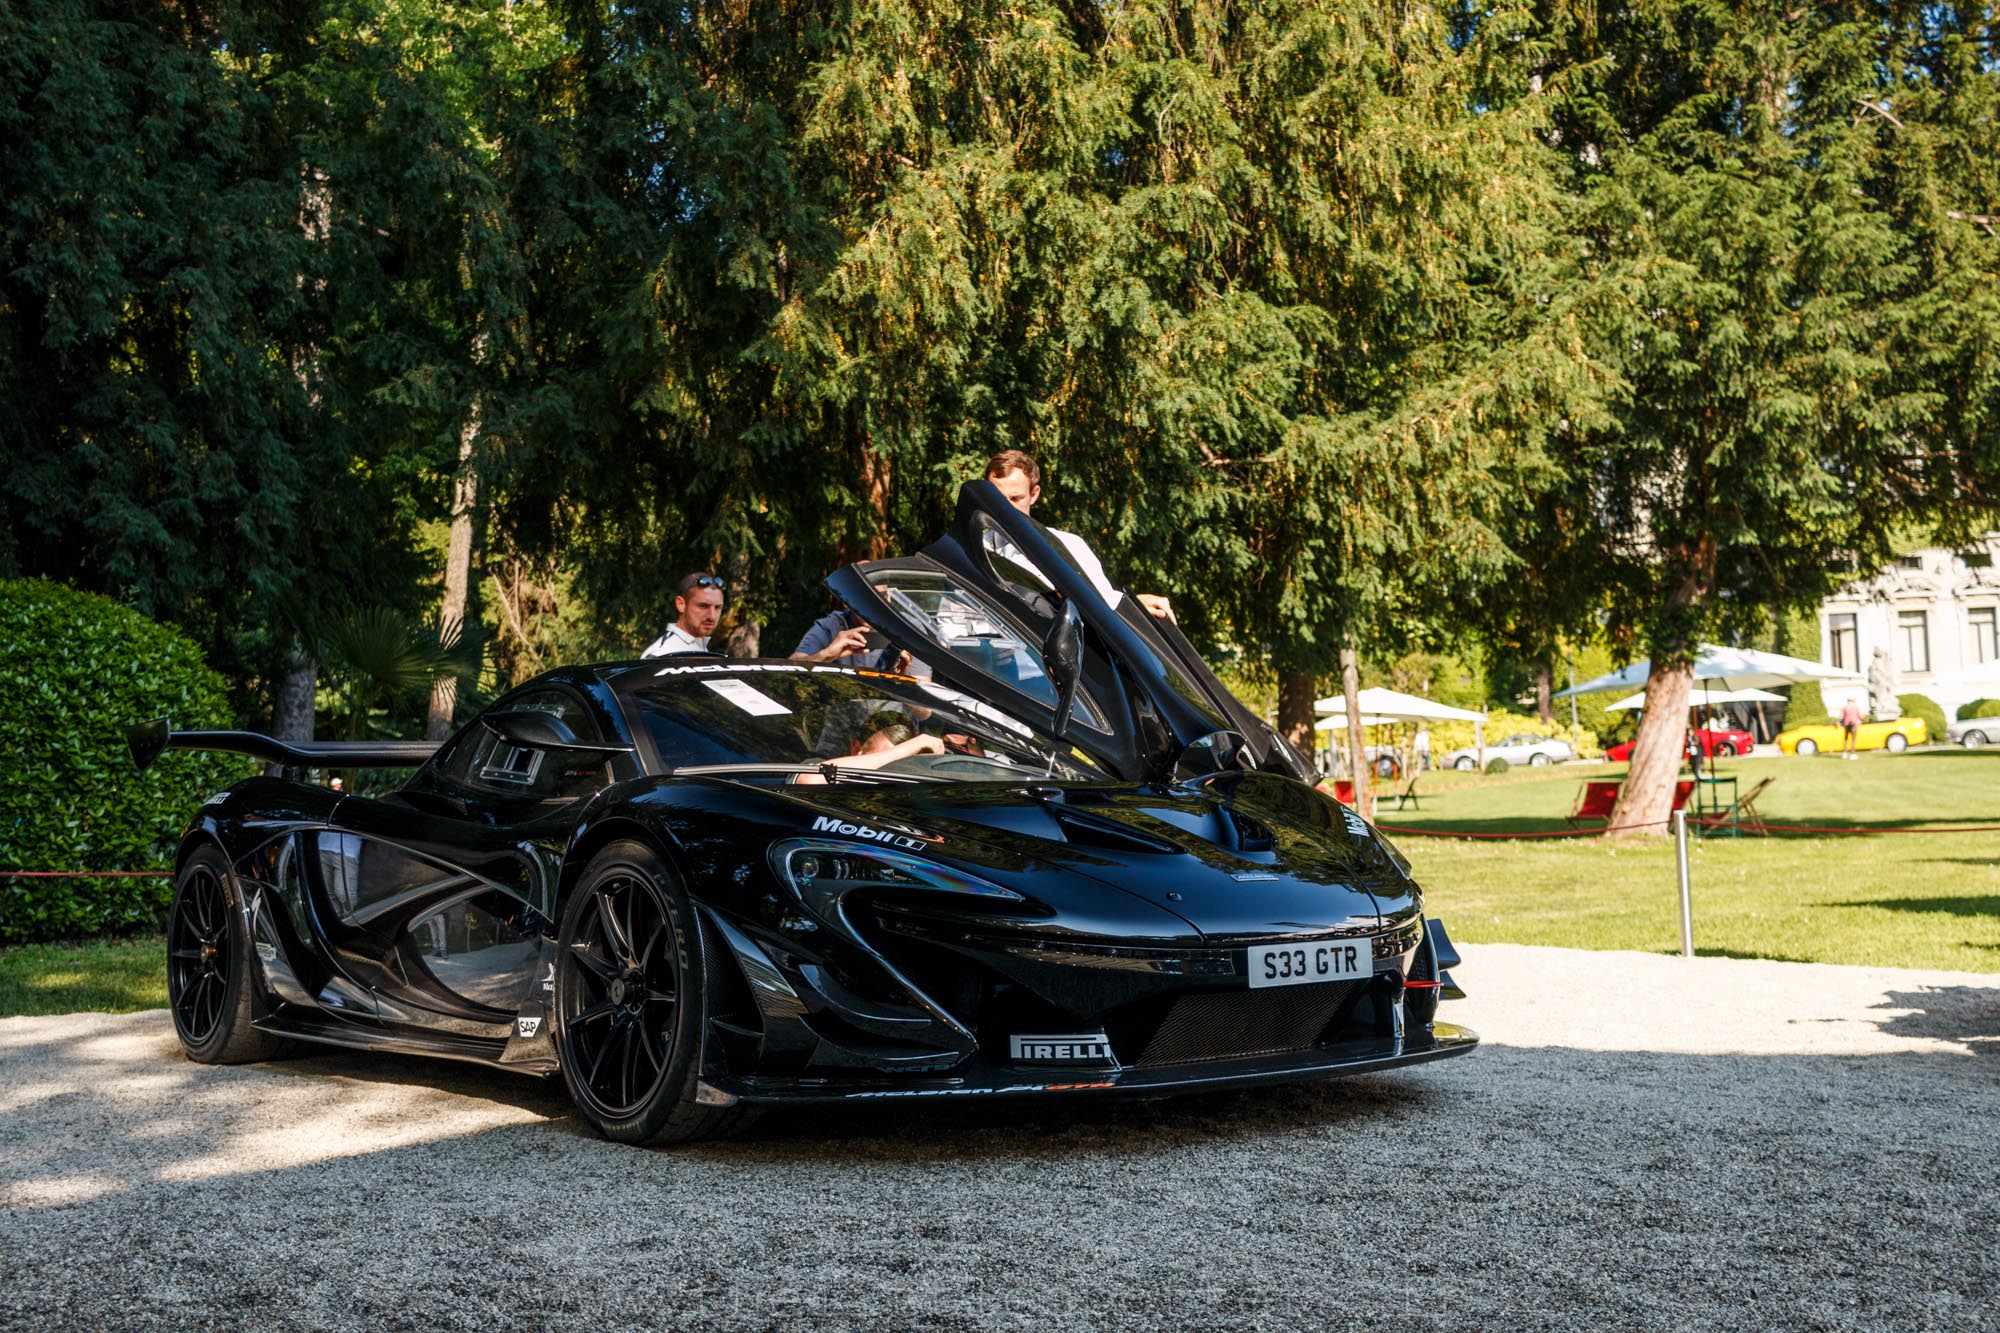 McLaren P1 GTR, estimée entre 3 200 000 et 3 600 000 euros. Adjugée à 2 850 000 euros, elle ne sera pas vendue.